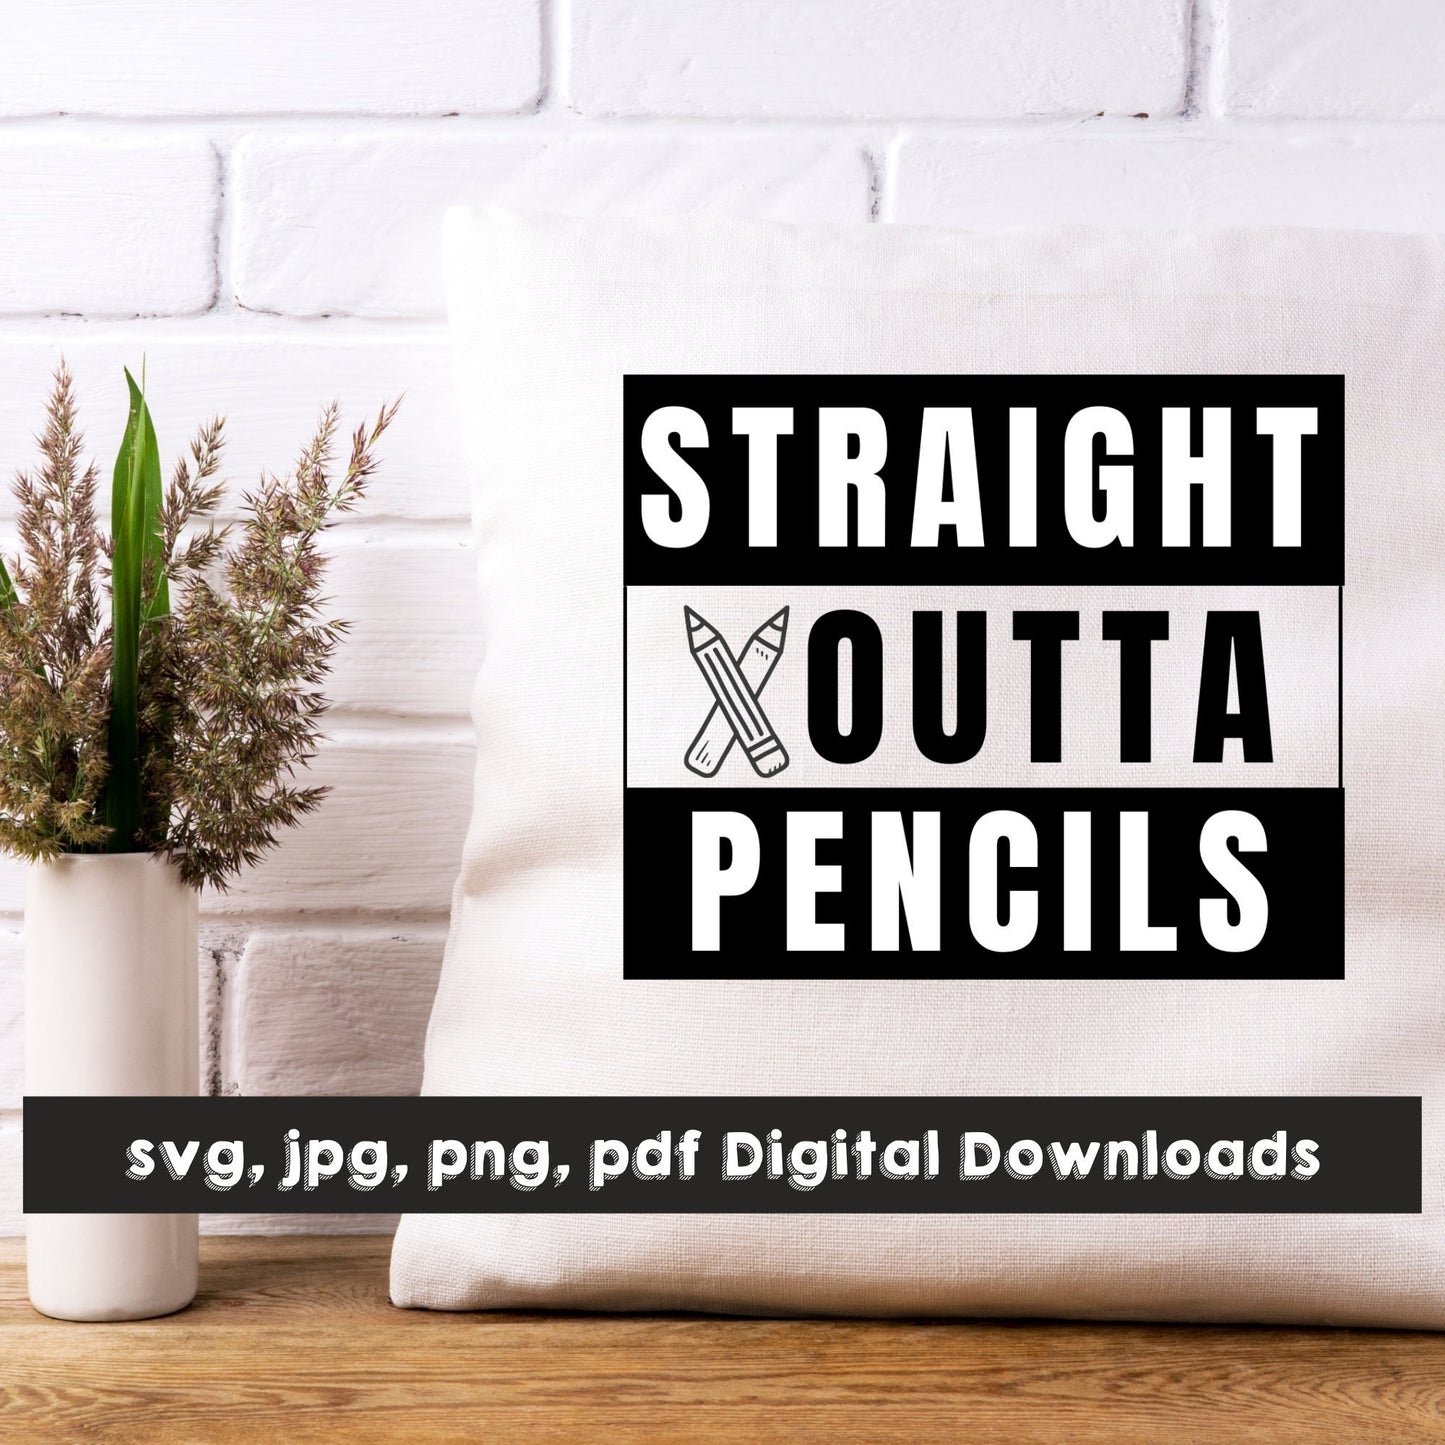 Straight Outta Pencils